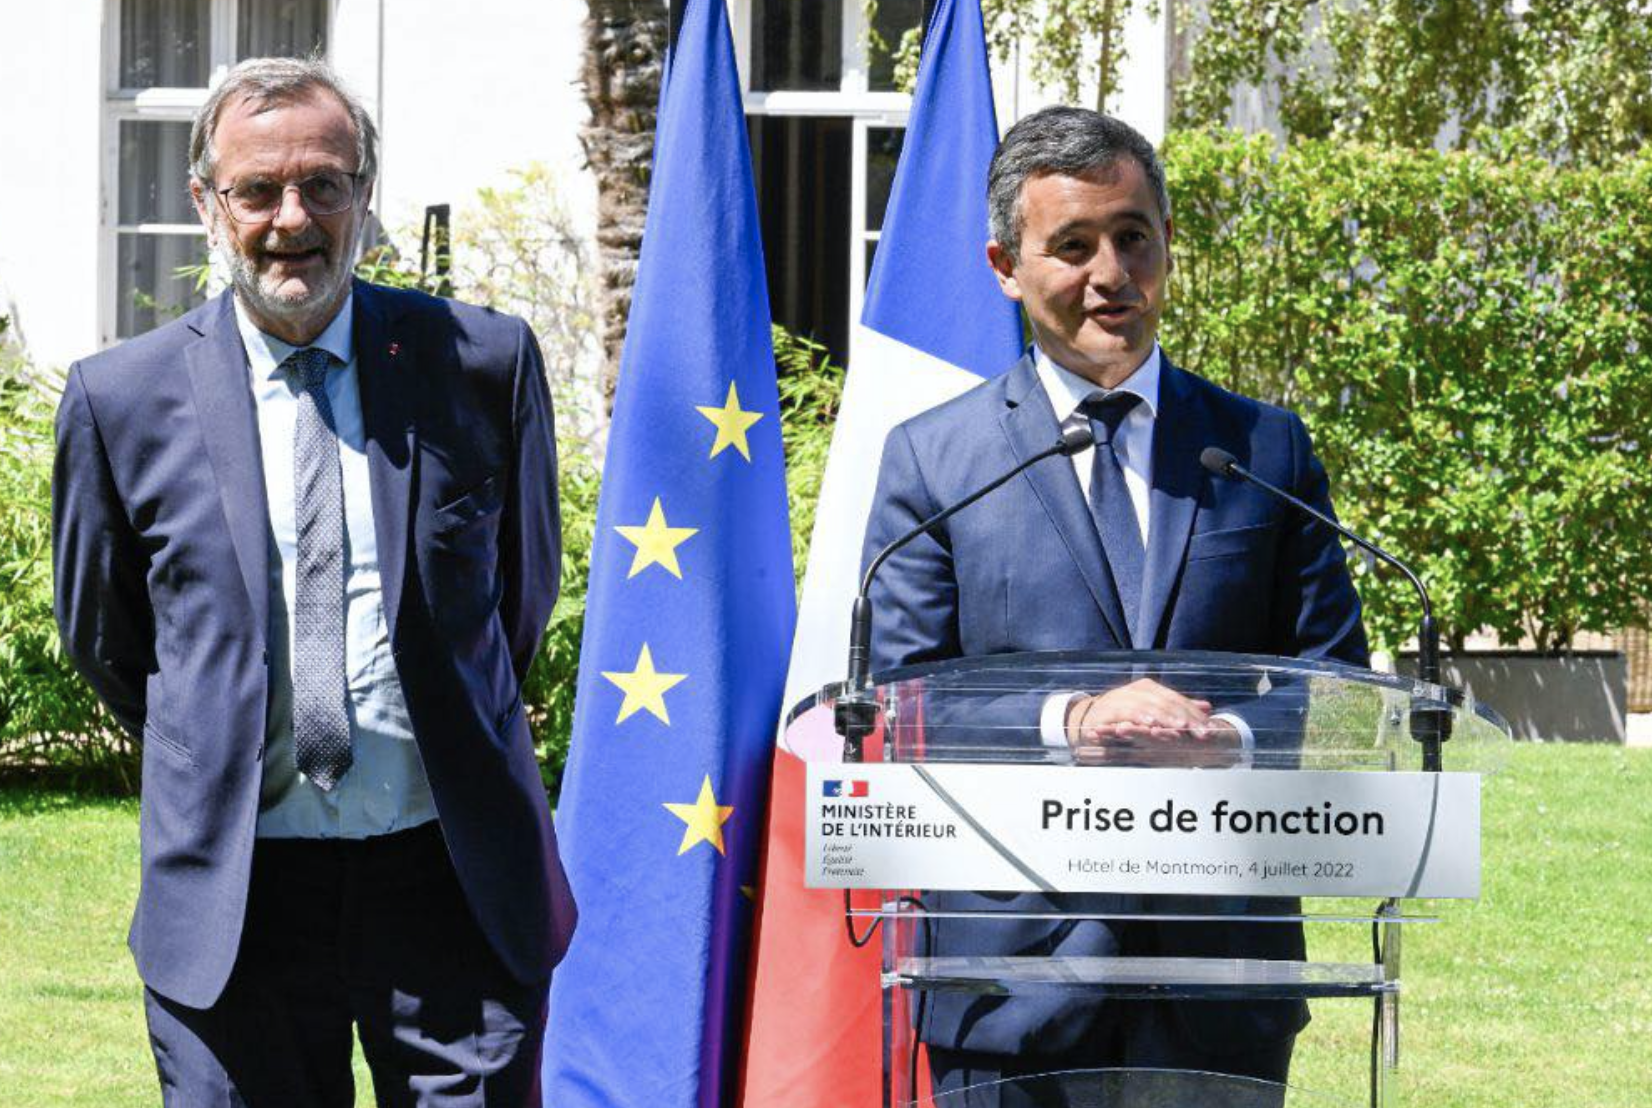 Le programme des ministres Gérald Darmanin et de Jean-François Carenco à La Réunion